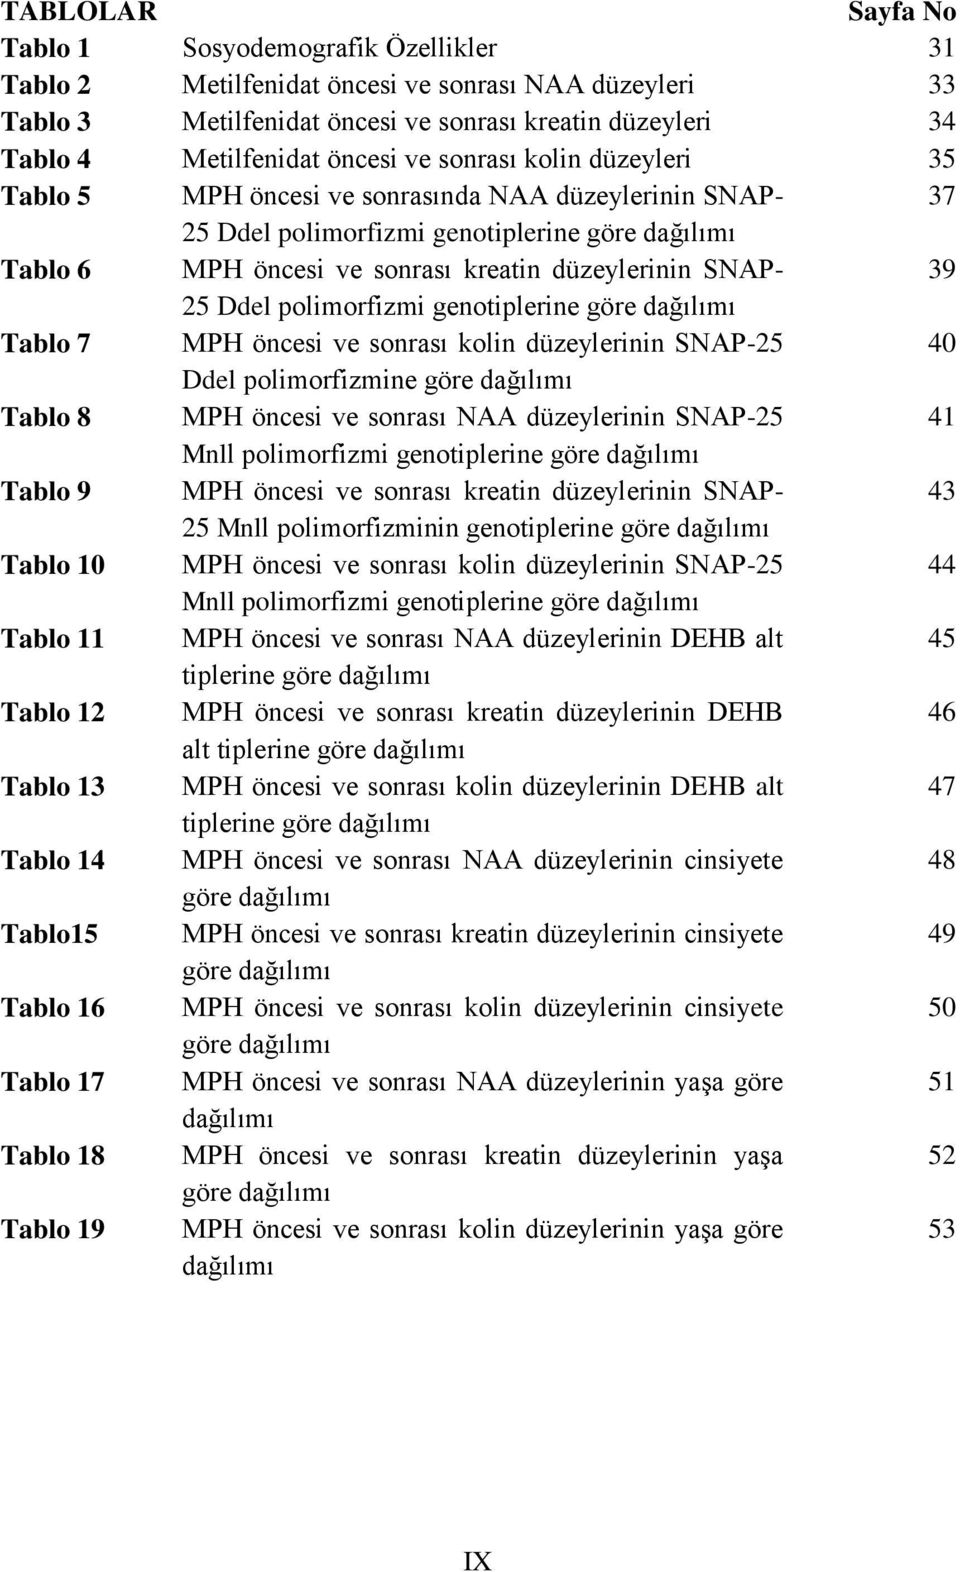 25 Ddel polimorfizmi genotiplerine göre dağılımı Tablo 7 MPH öncesi ve sonrası kolin düzeylerinin SNAP-25 40 Ddel polimorfizmine göre dağılımı Tablo 8 MPH öncesi ve sonrası NAA düzeylerinin SNAP-25